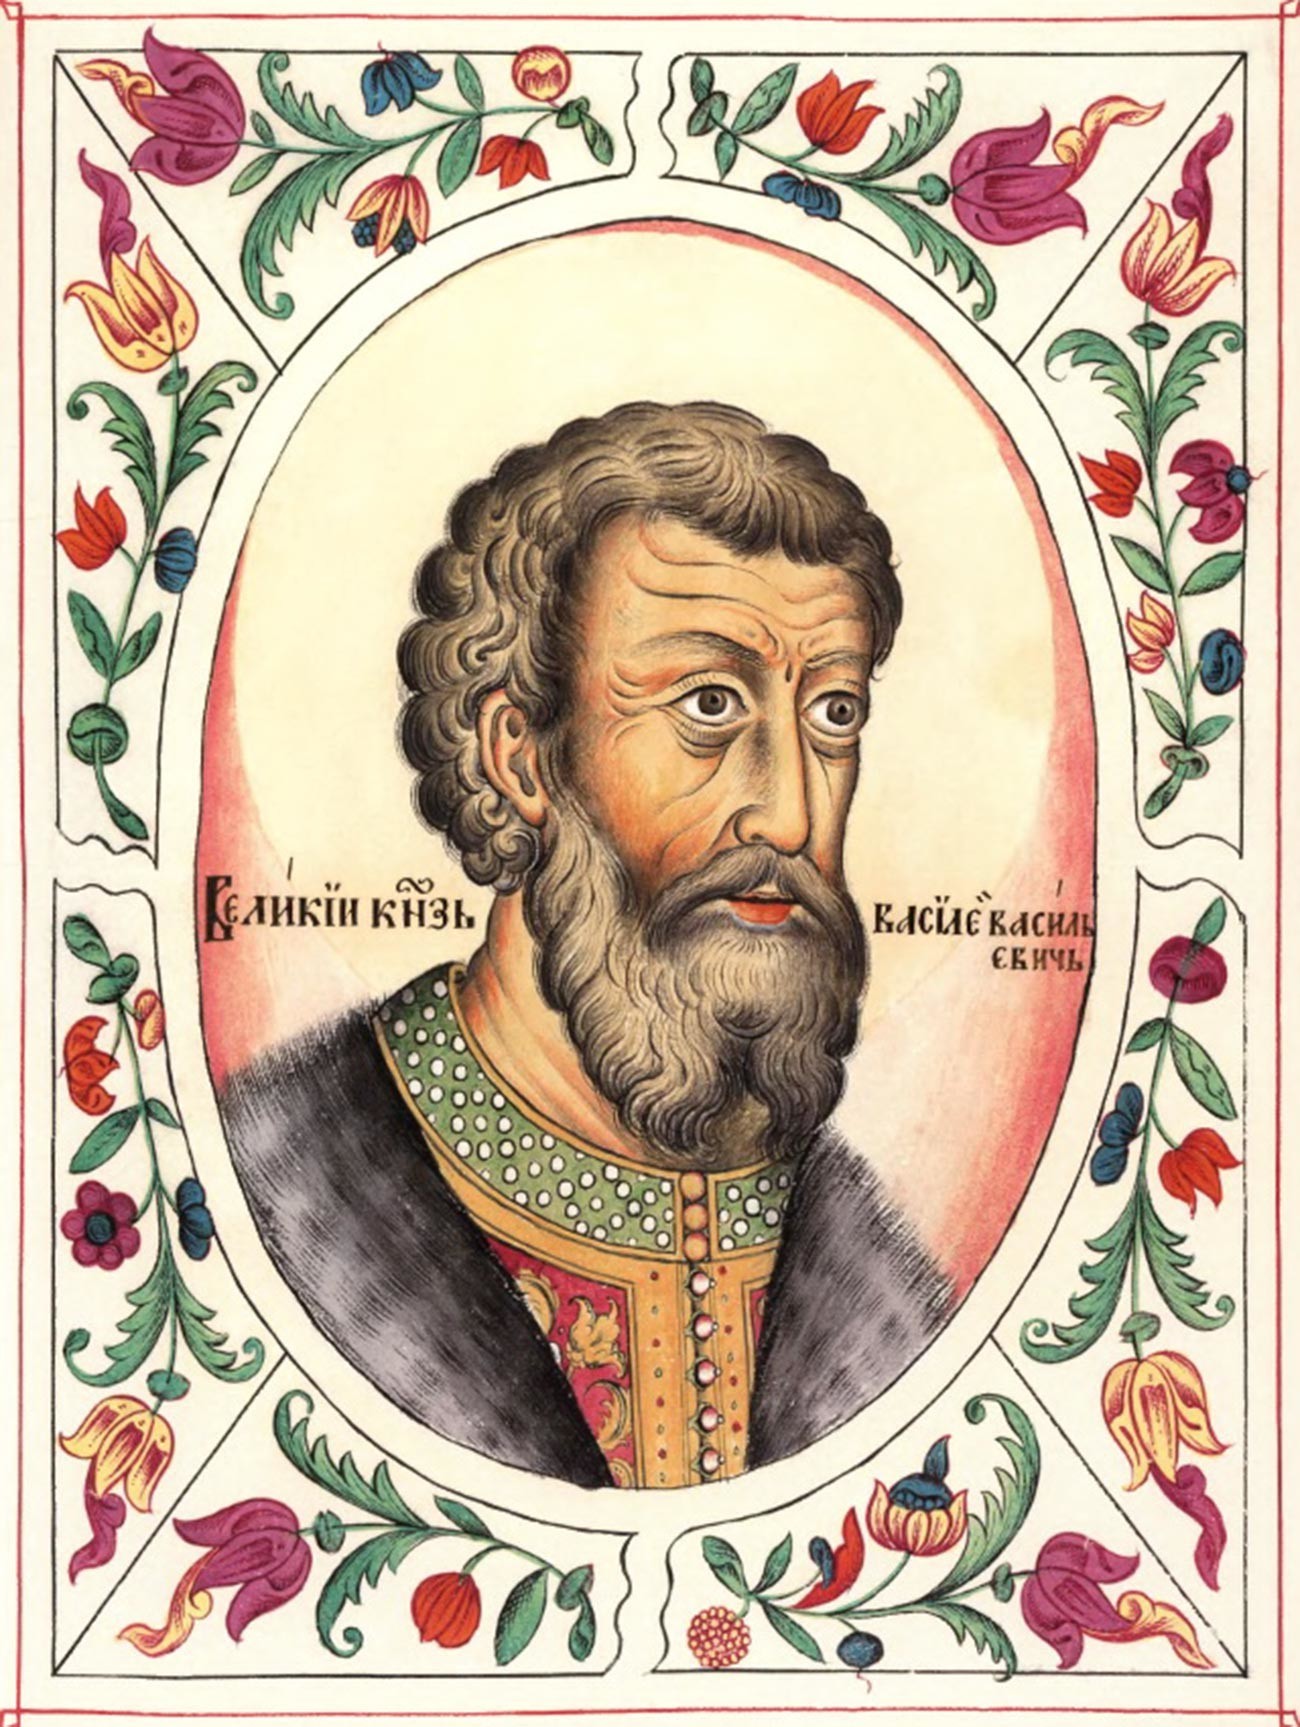 Vasily II dari Moskow. Potret ini hanyalah gambar dari sebuah kronik. Kami tidak memiliki gambar Vasily dan tidak tahu bagaimana penampilannya.